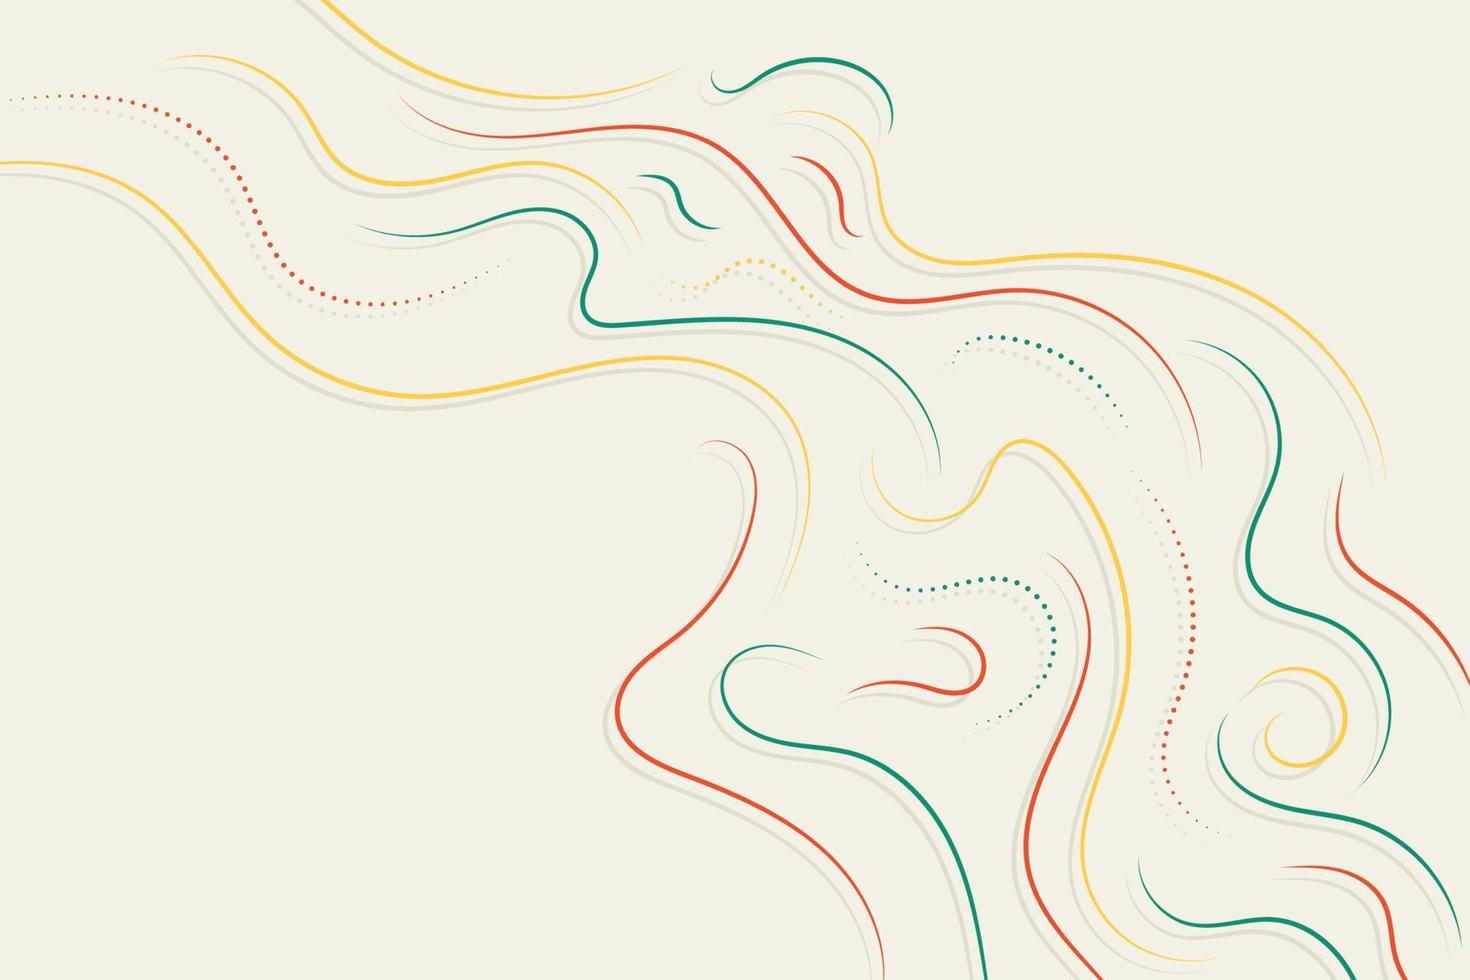 fond d'écran d'illustration de lignes ondulées rouges, jaunes et vertes dynamiques vecteur